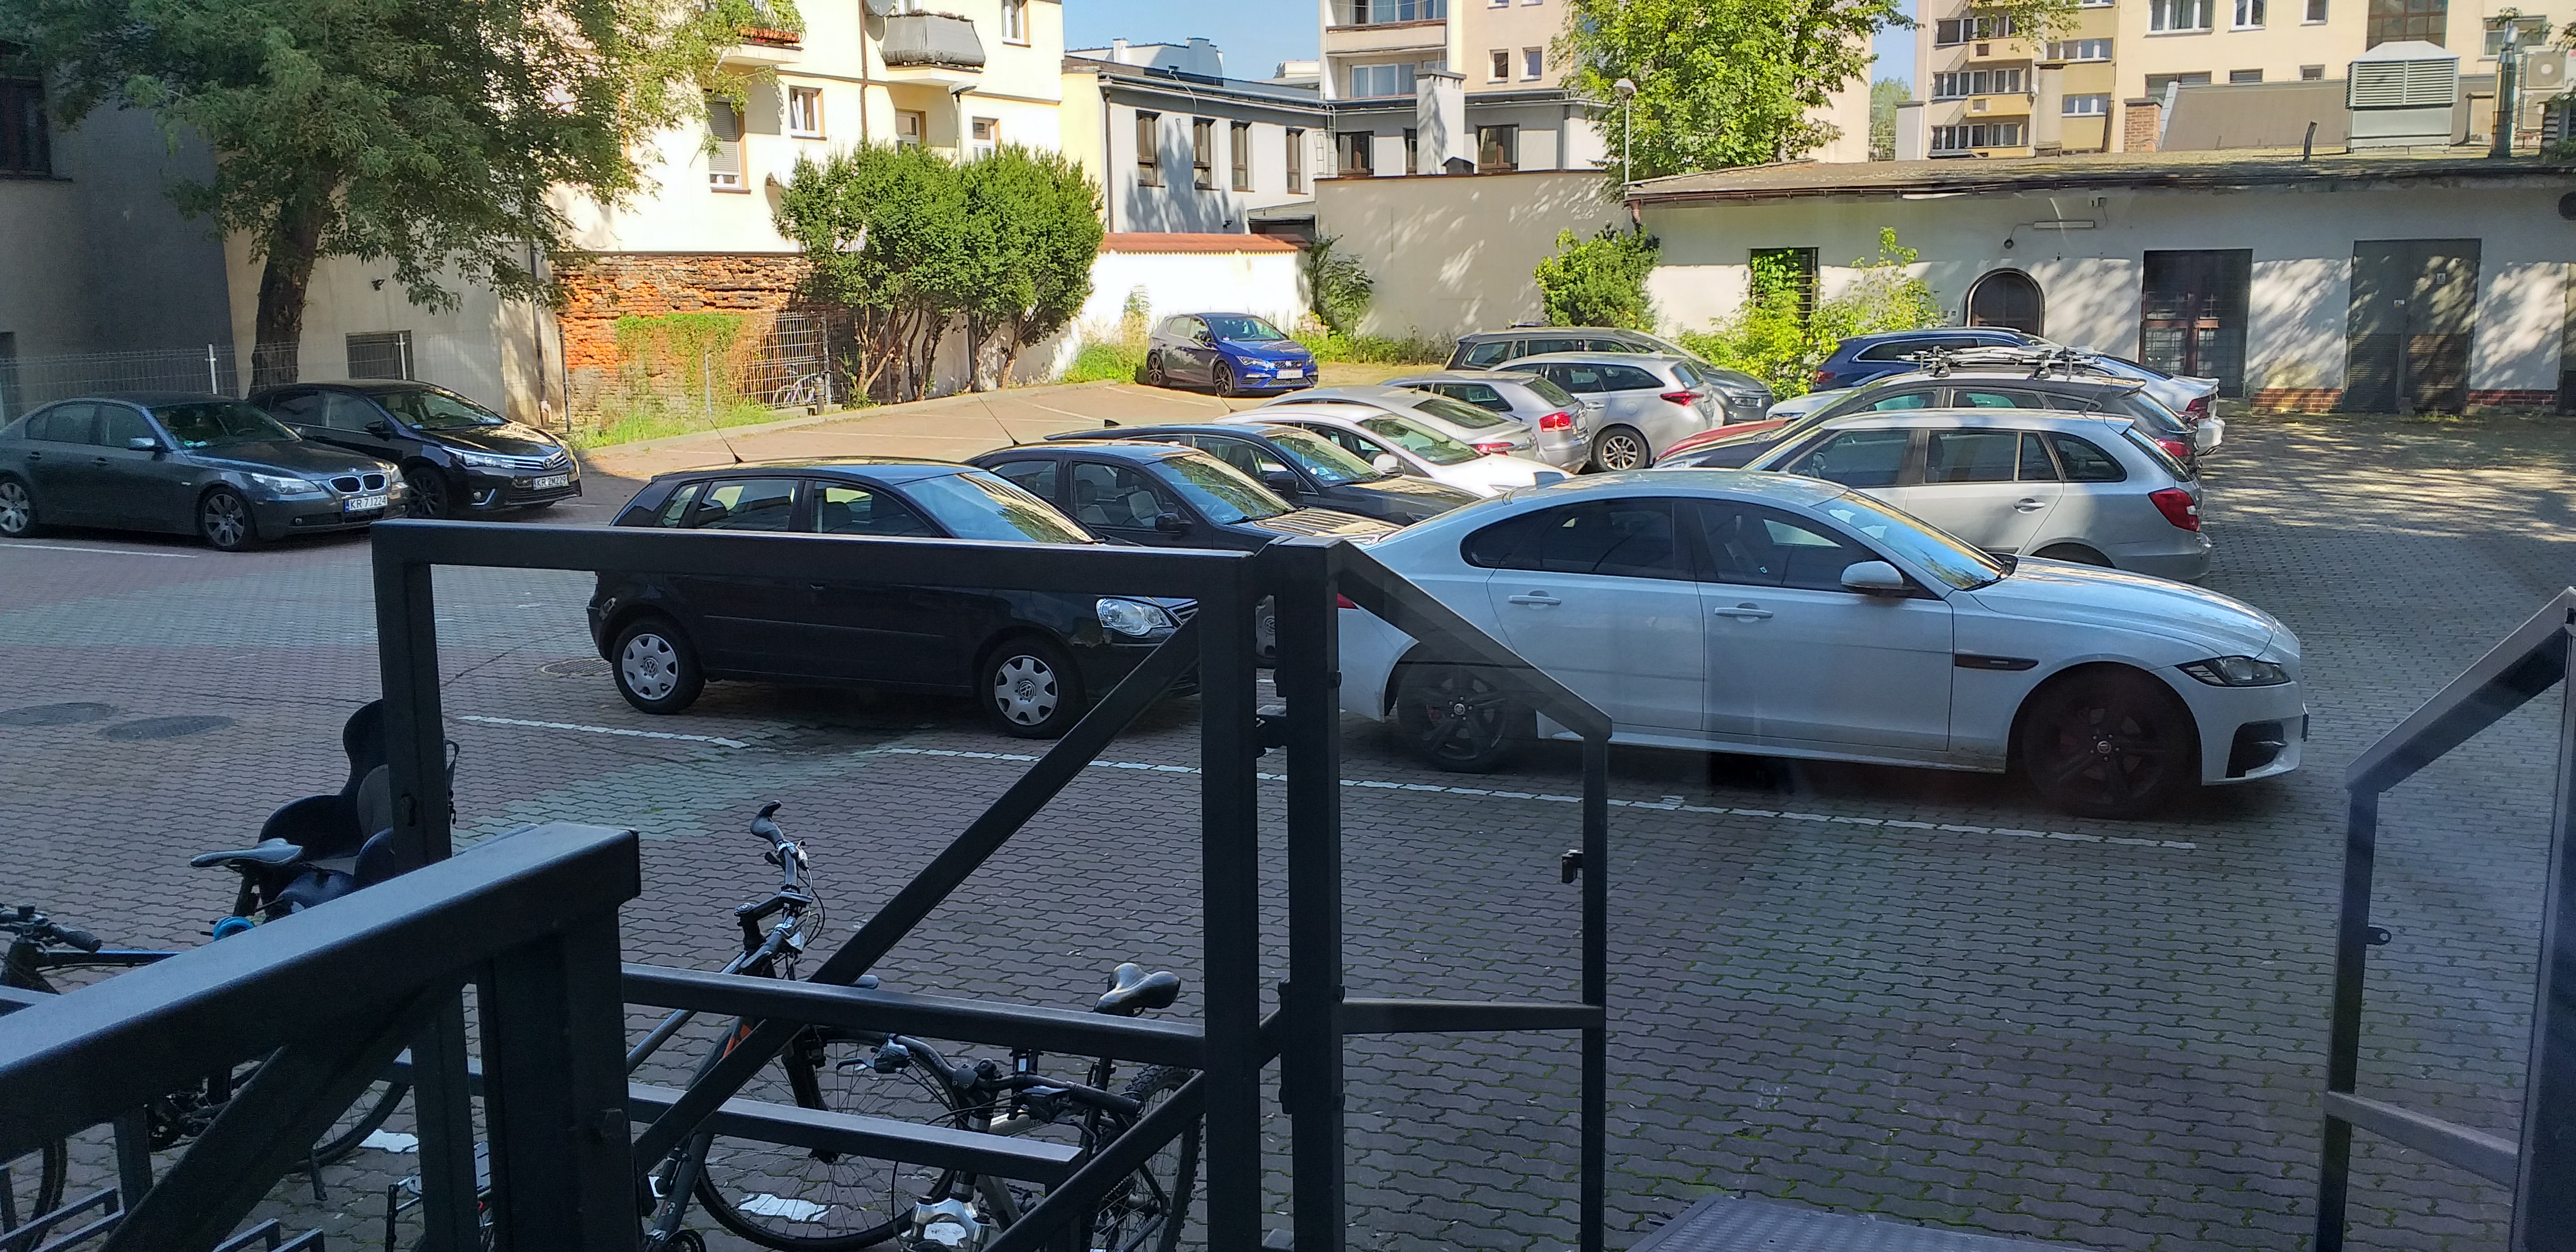 Widok z drzwi wejściowych do budynku na parking. Na pierwszym planie konstrukcja pochylni oraz zaparkowane rowery. Na parkingu zaparkowane samochody, w tle ogrodzenie parkingu oraz budynki parterowe. Za nimi widać rosnące drzewa i budynki mieszkalne 